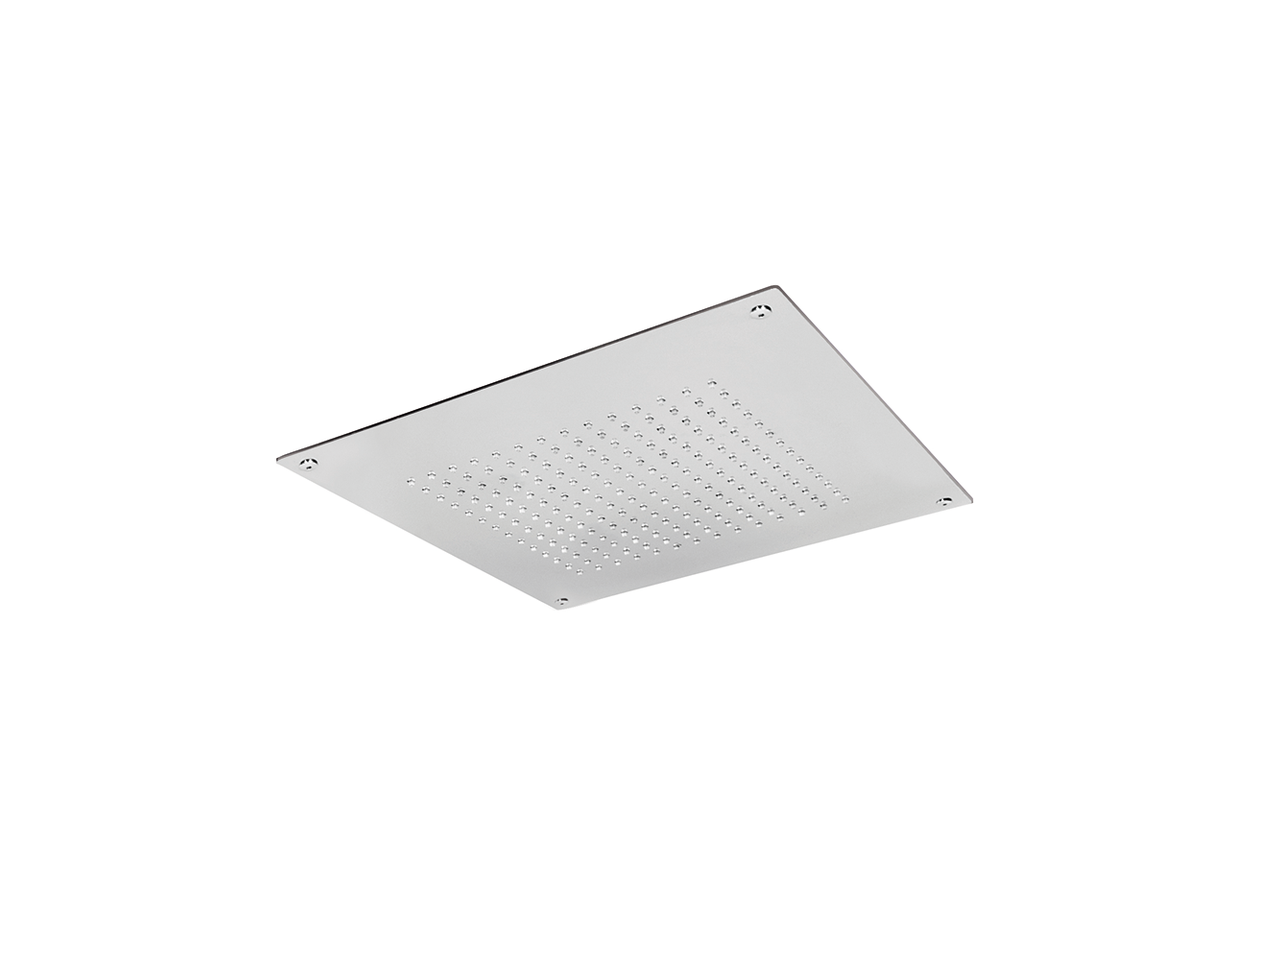 488x488mm stainless steel false ceiling showerhead ZEN - v1